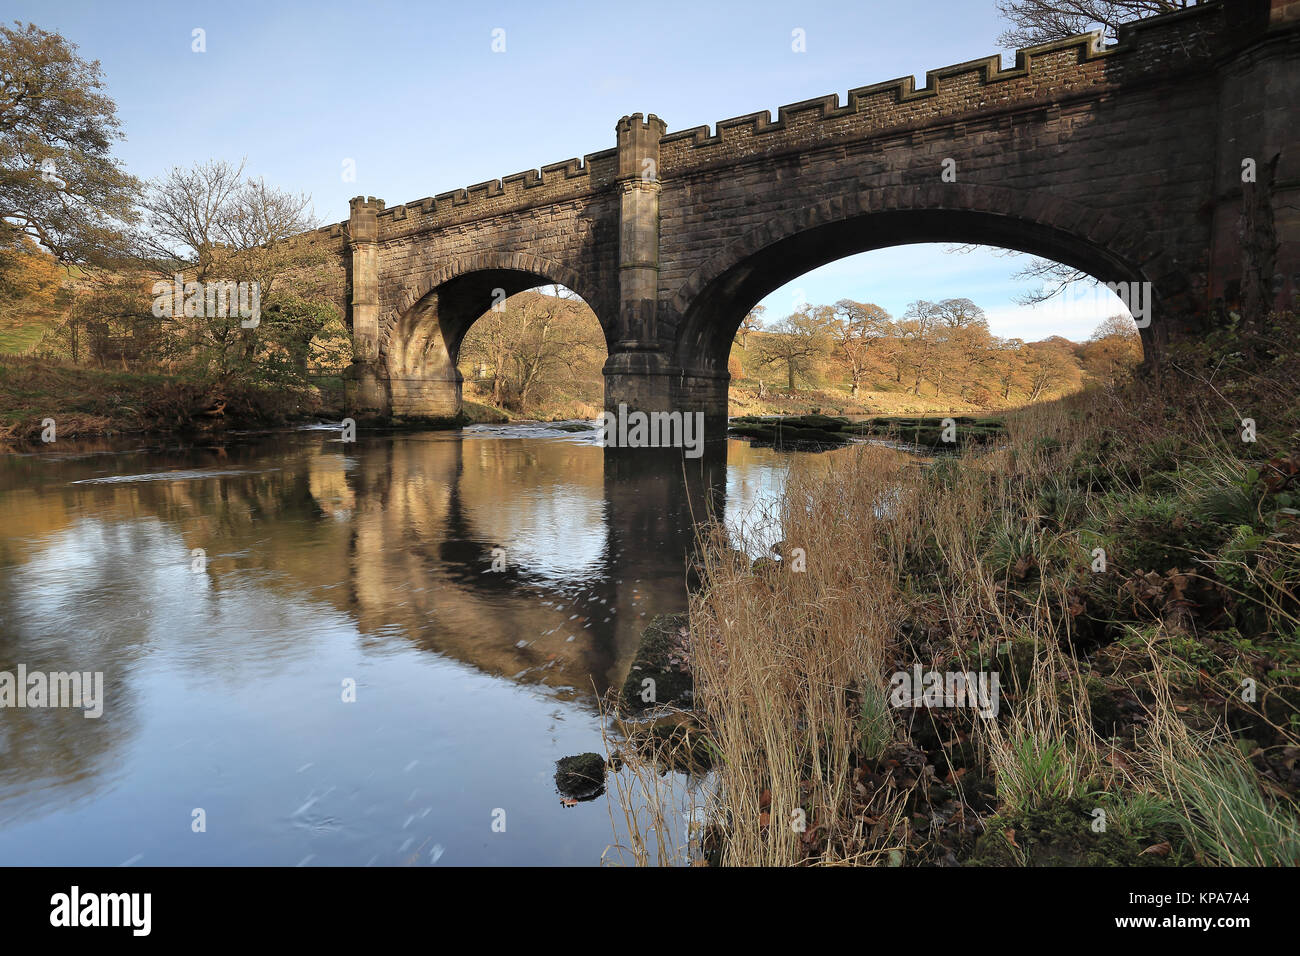 Eine Brücke und Aquädukt über den Fluss Strid Wharfe im Wald, in der Nähe von Bolton Abbey in Yorkshire Dales National Park, North Yorkshire, England, Großbritannien Stockfoto